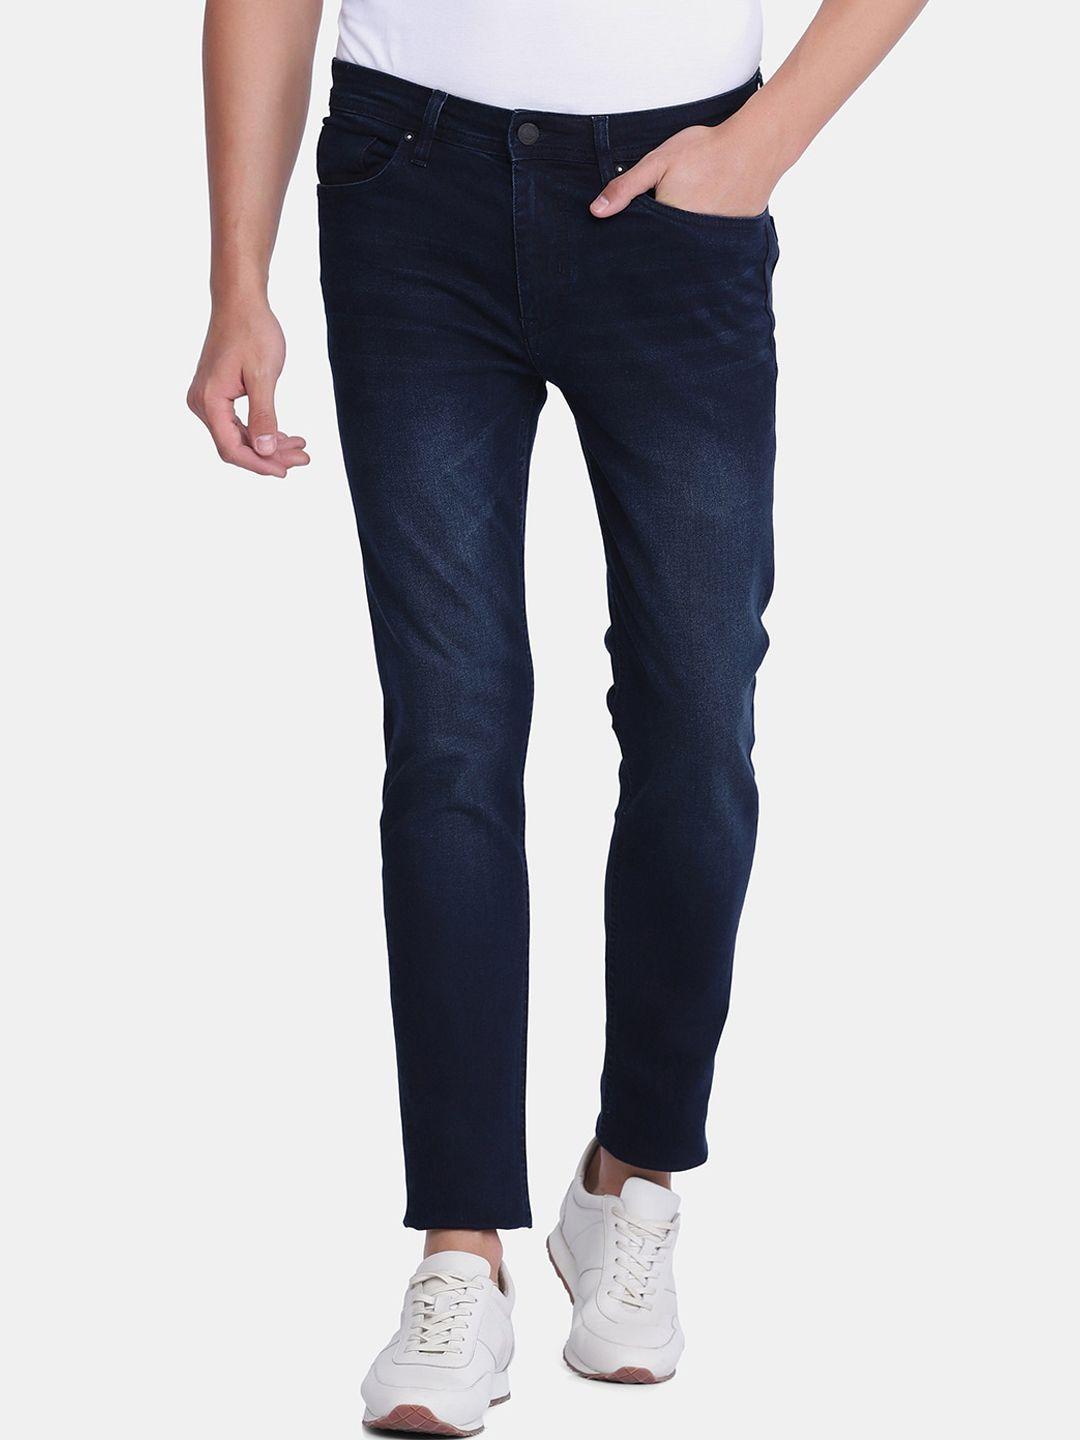 blackberrys-men-blue-skinny-fit-low-rise-light-fade-jeans